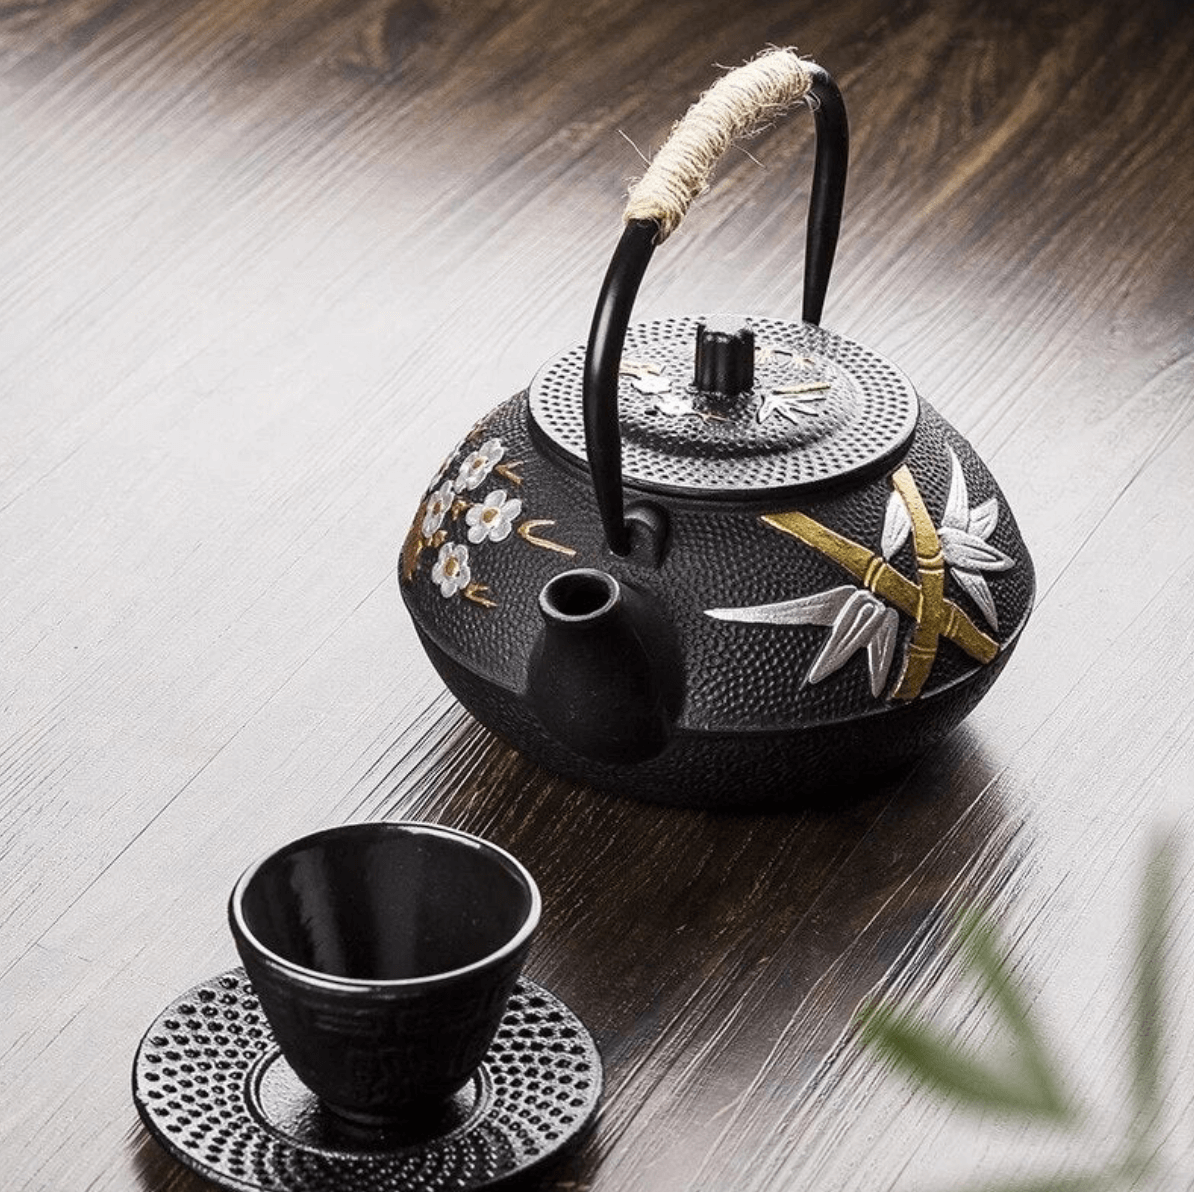 Achetez des théières japonaises en céramique authentiques en ligne